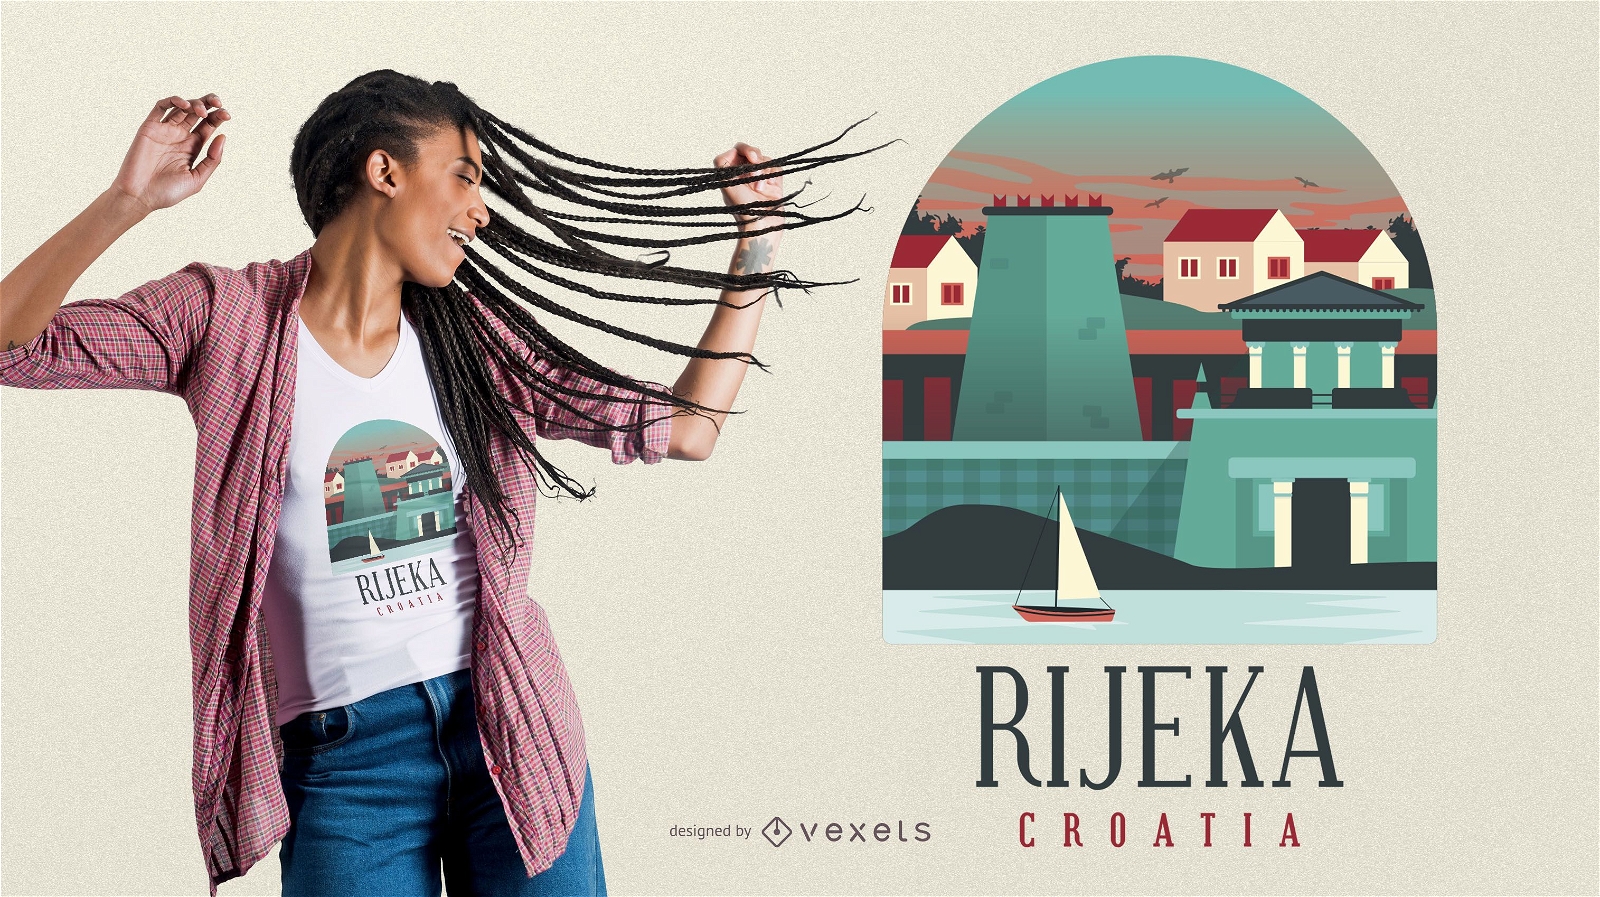 Rijeka Croatia T-shirt Design